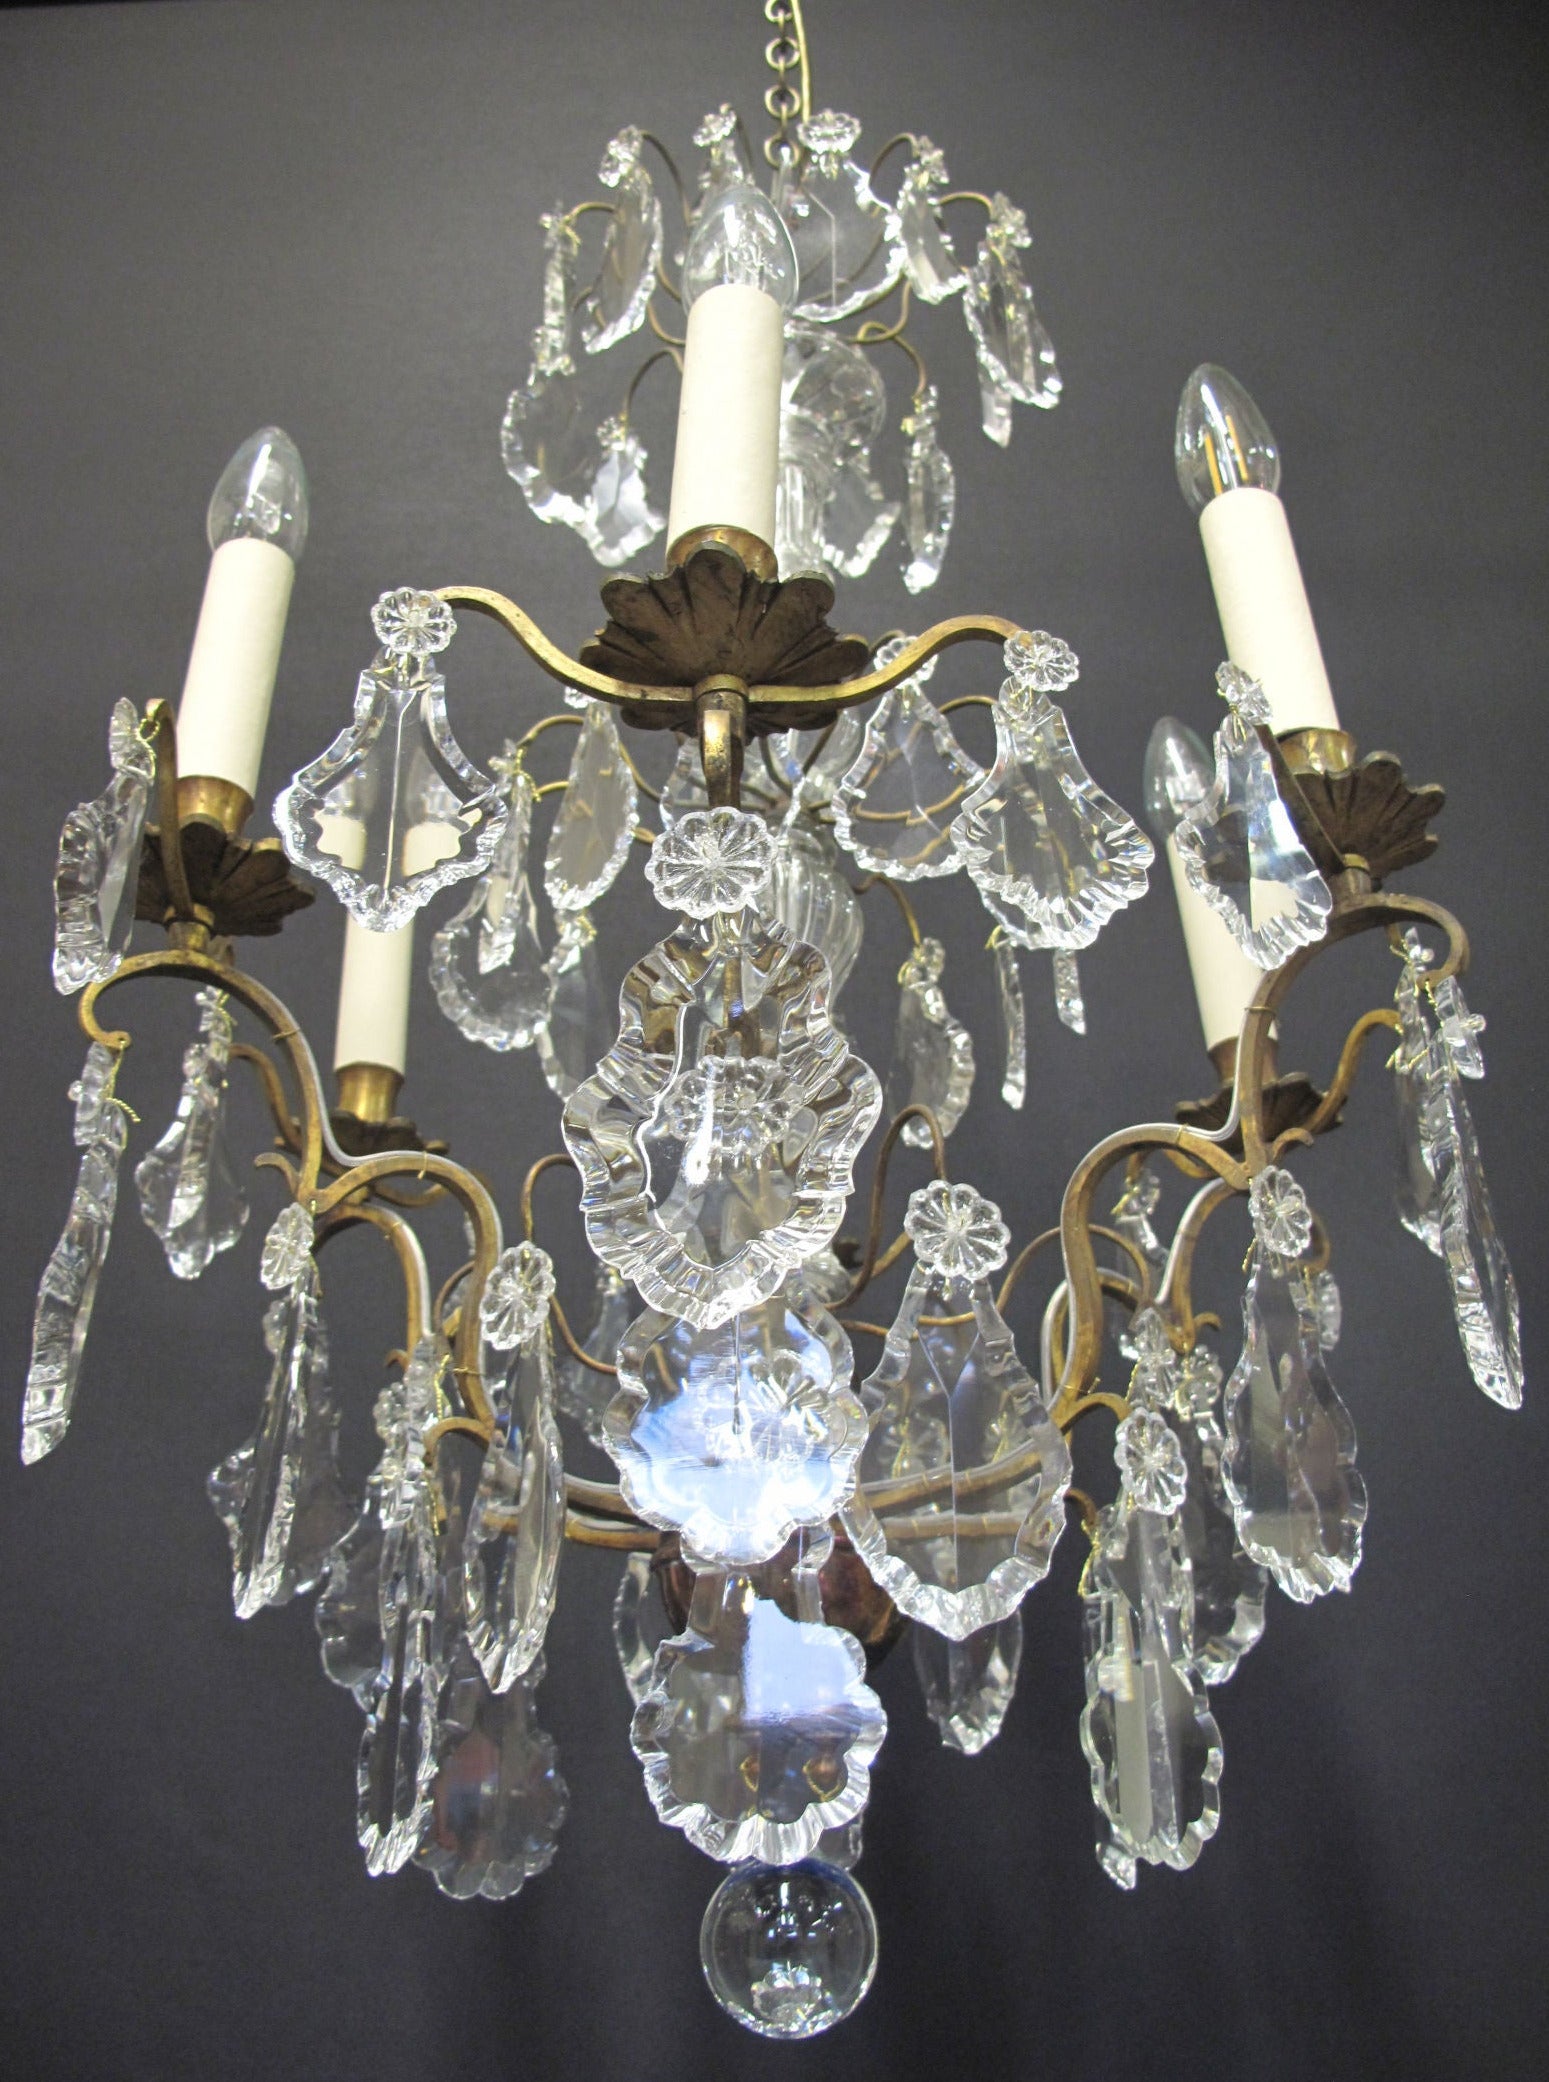 chandelier from below